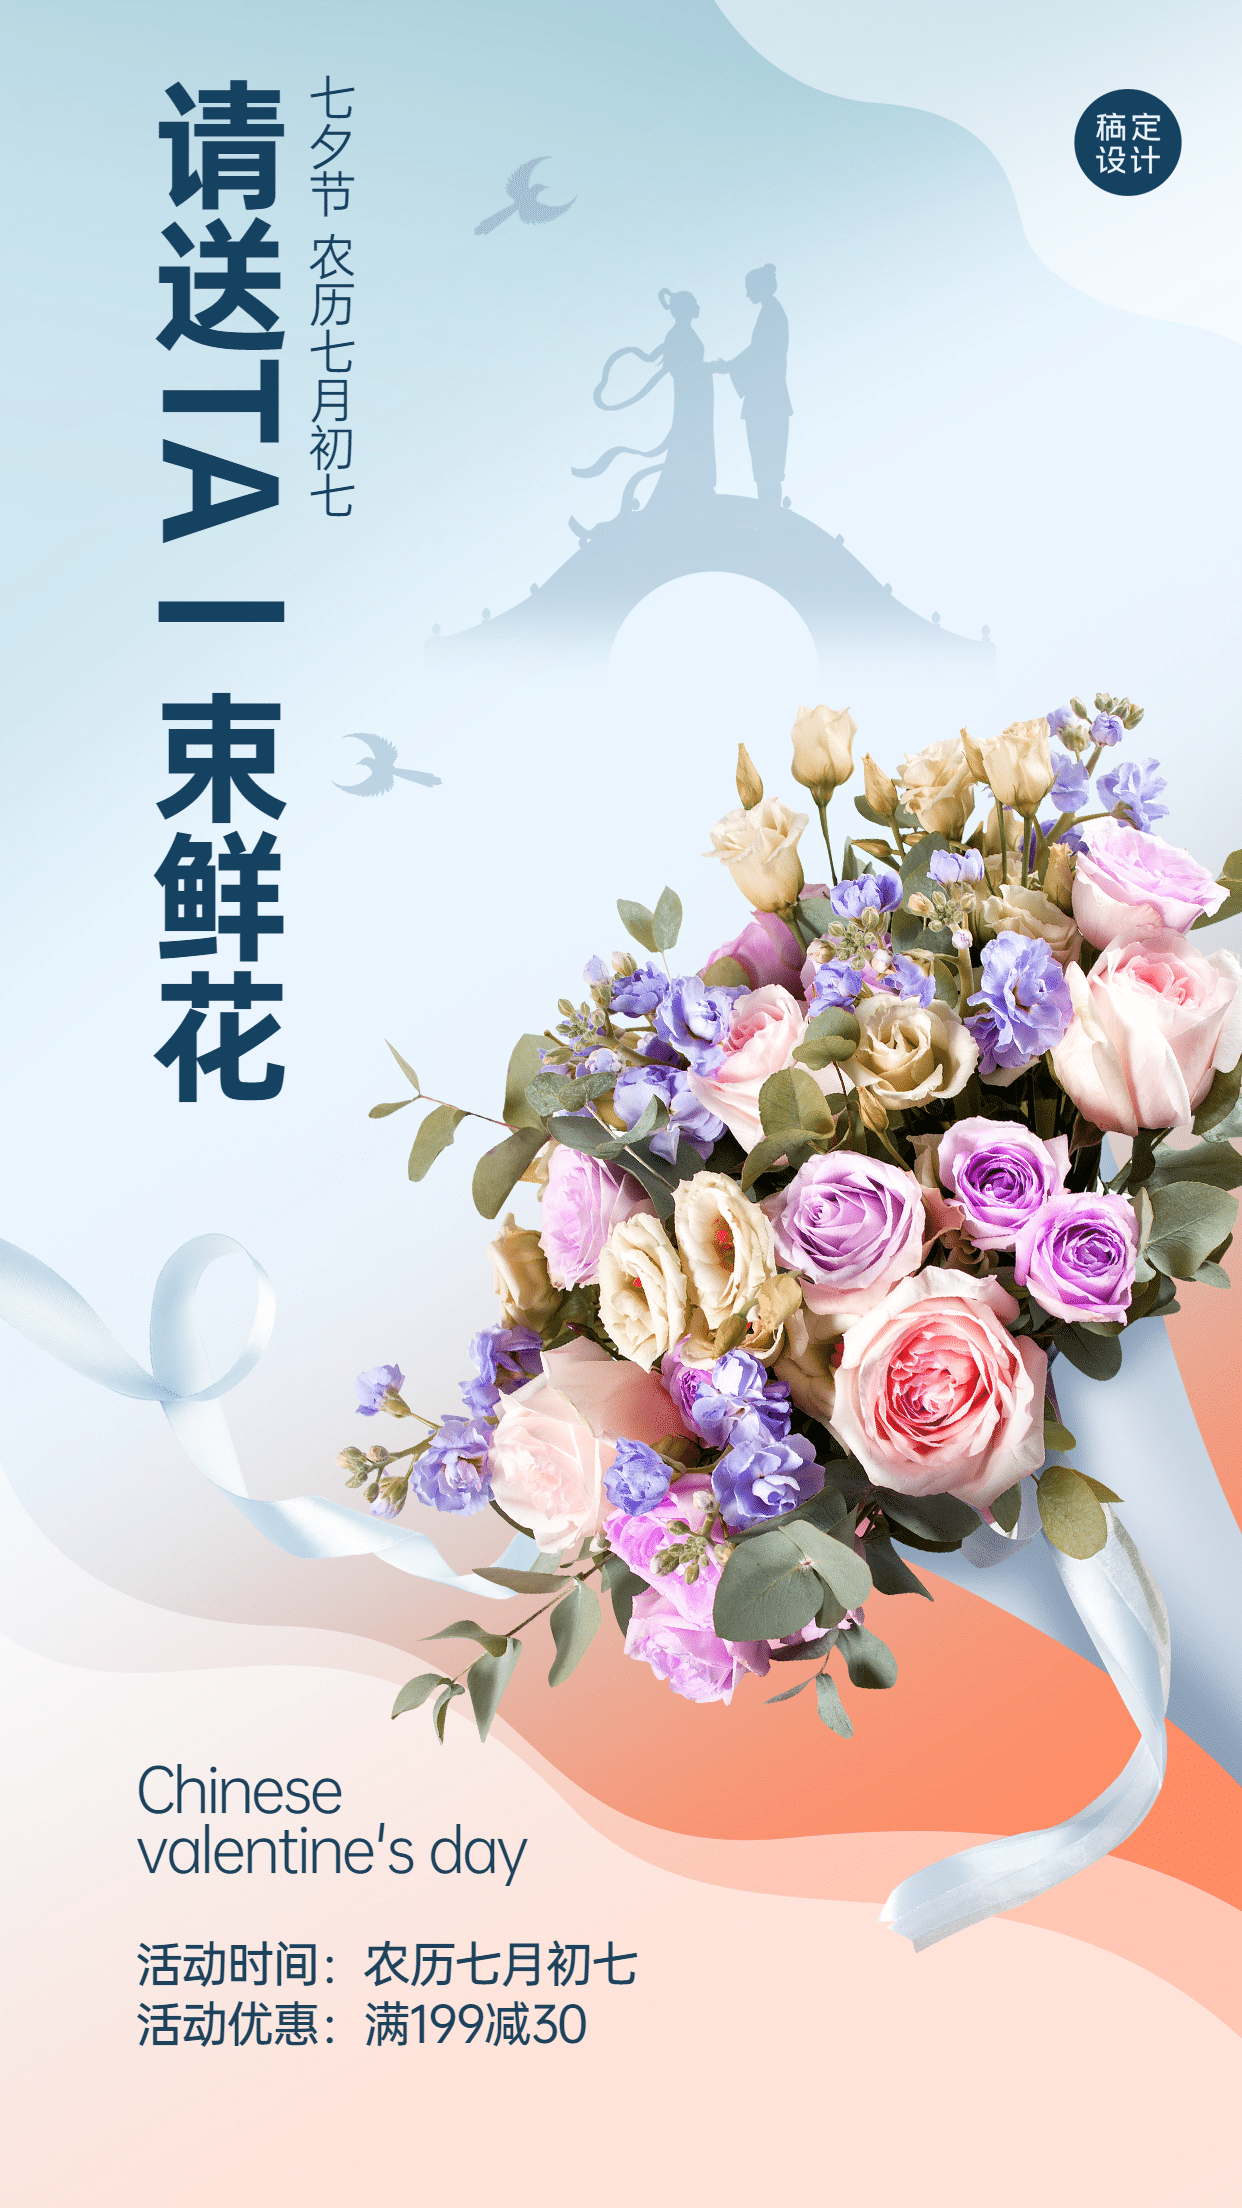 七夕情人节鲜花产品展示手机海报预览效果